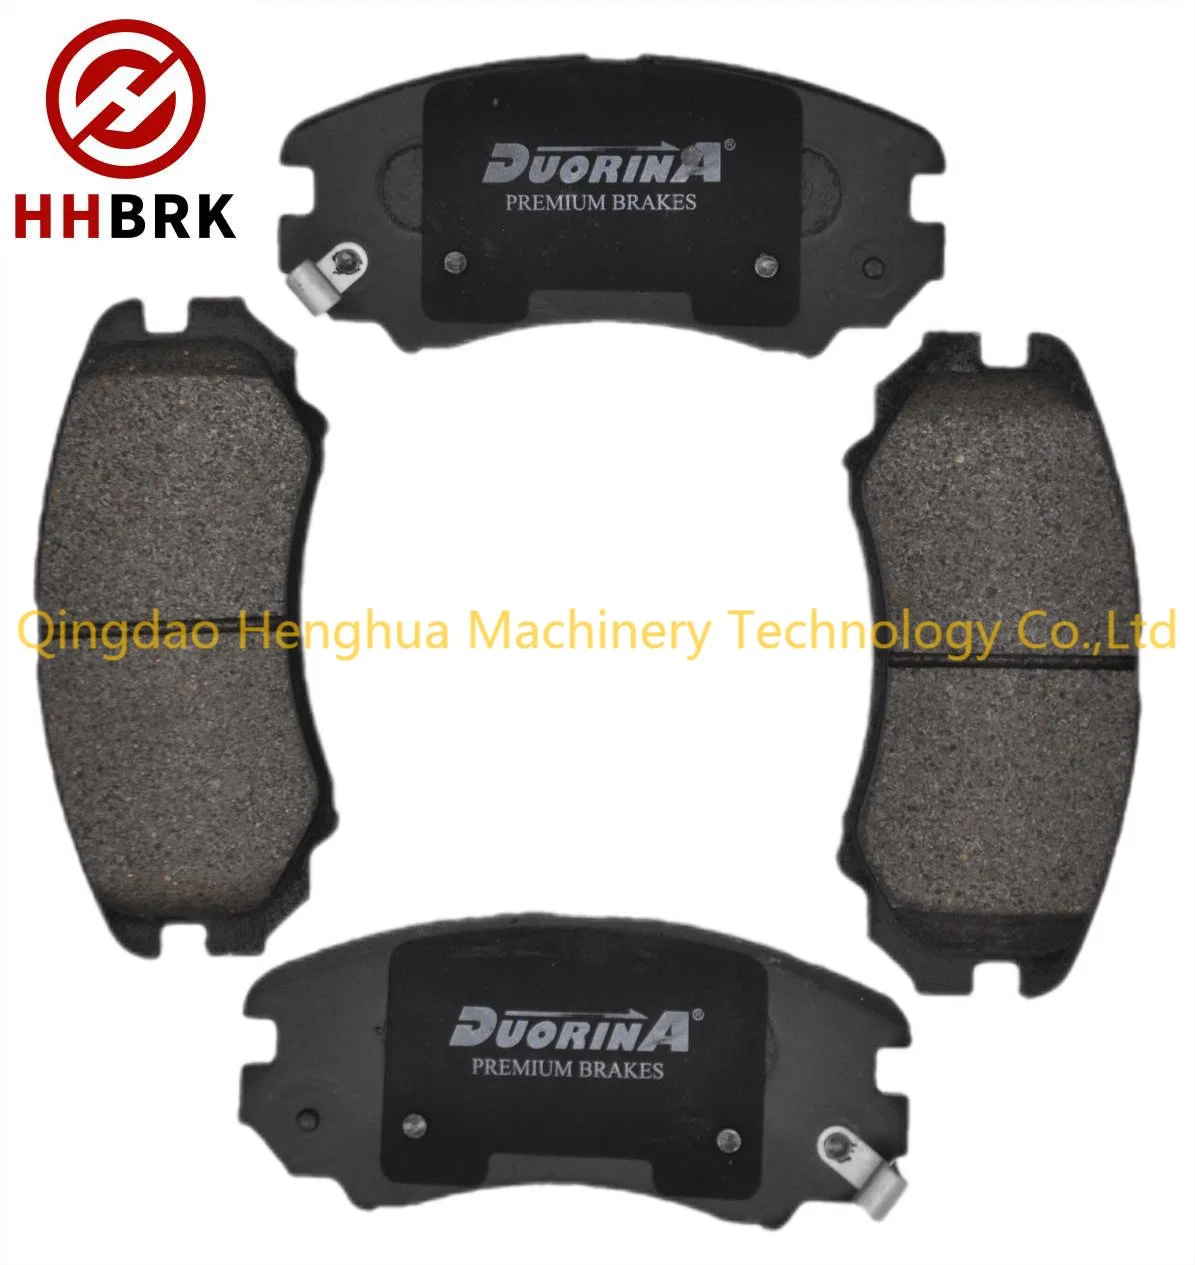 Sp1155 Sp1202 Auto Brake Spare Parts Metallic Disc Car Brake Pads for Hyundai Elantra Sonata Tiburon Tucson